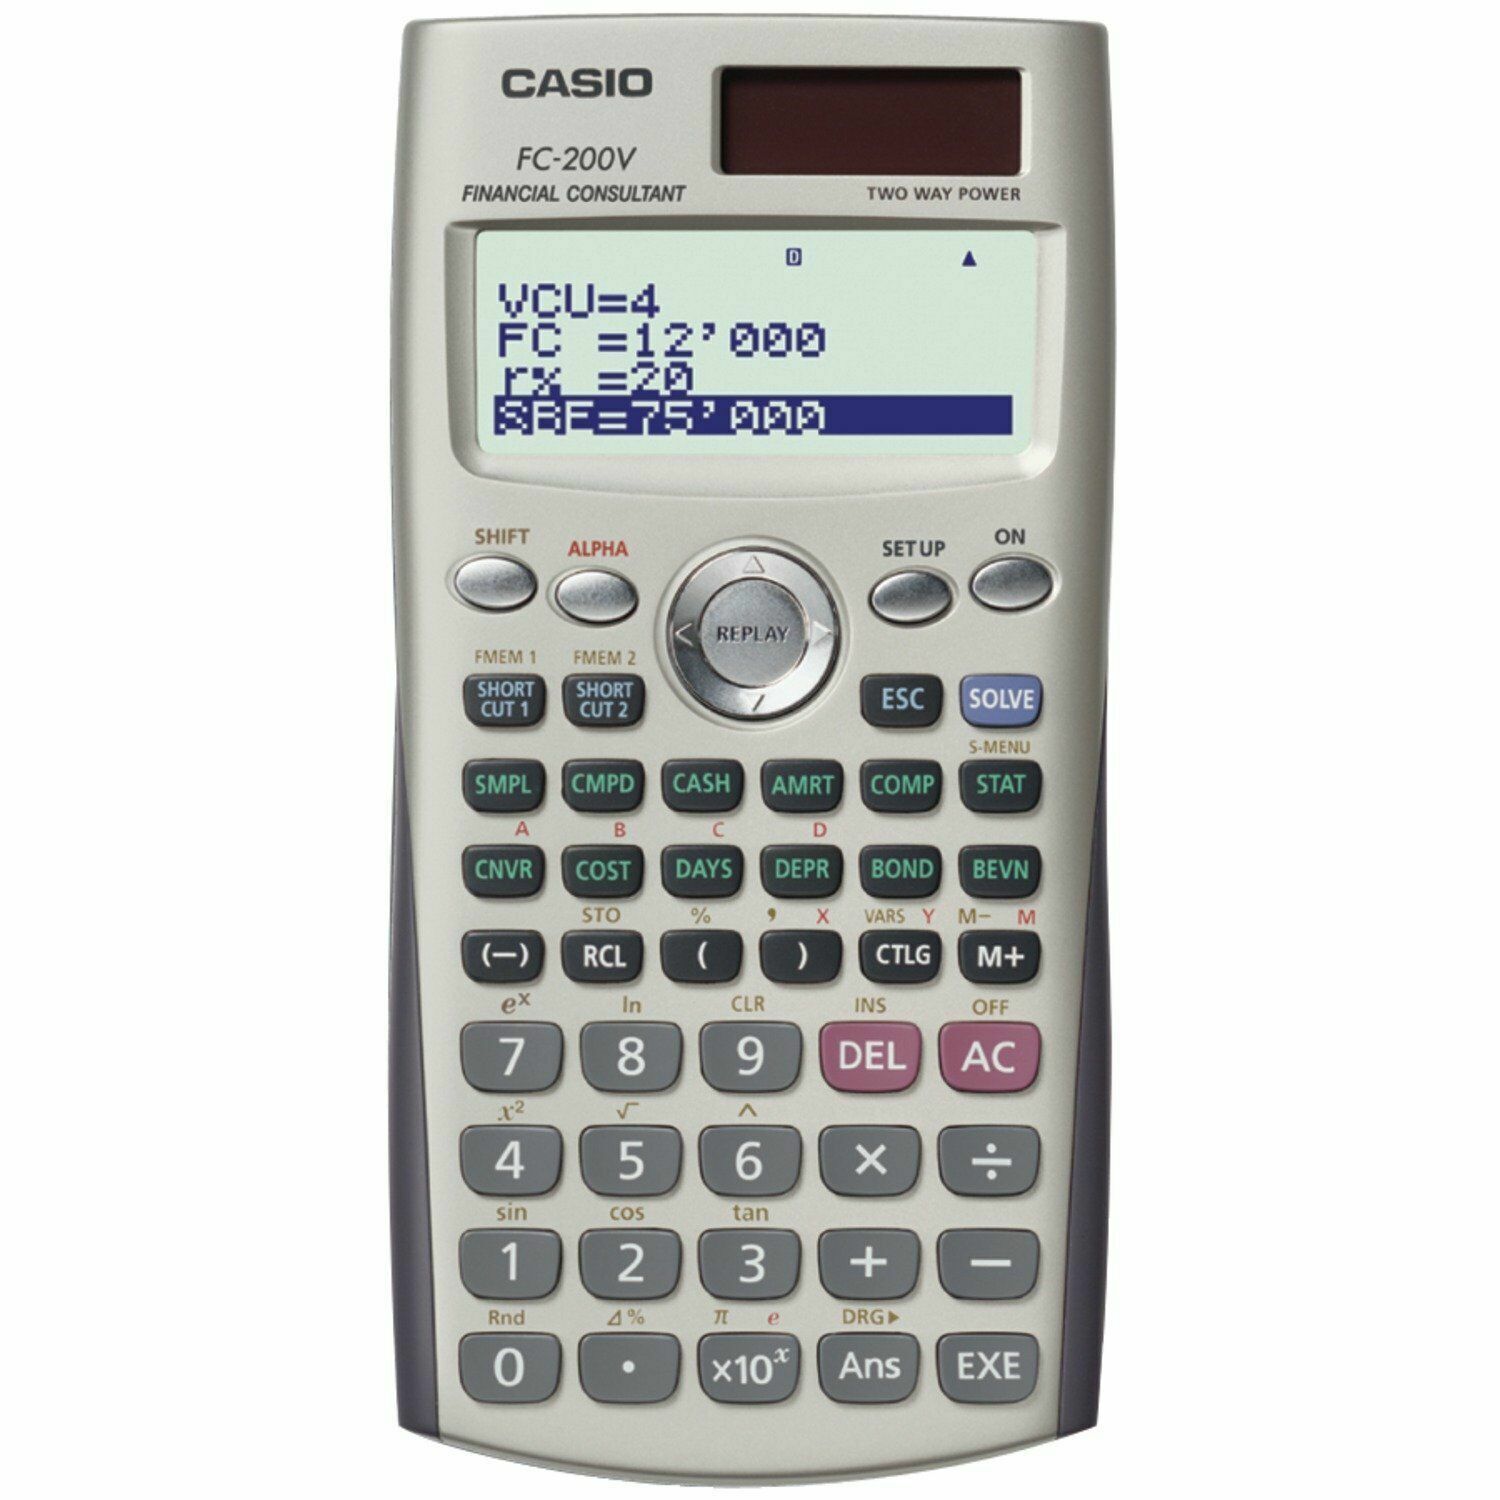 Casio FC 200V Calculadora financiera FC 200 V FC200V A estrenar en caja sellada